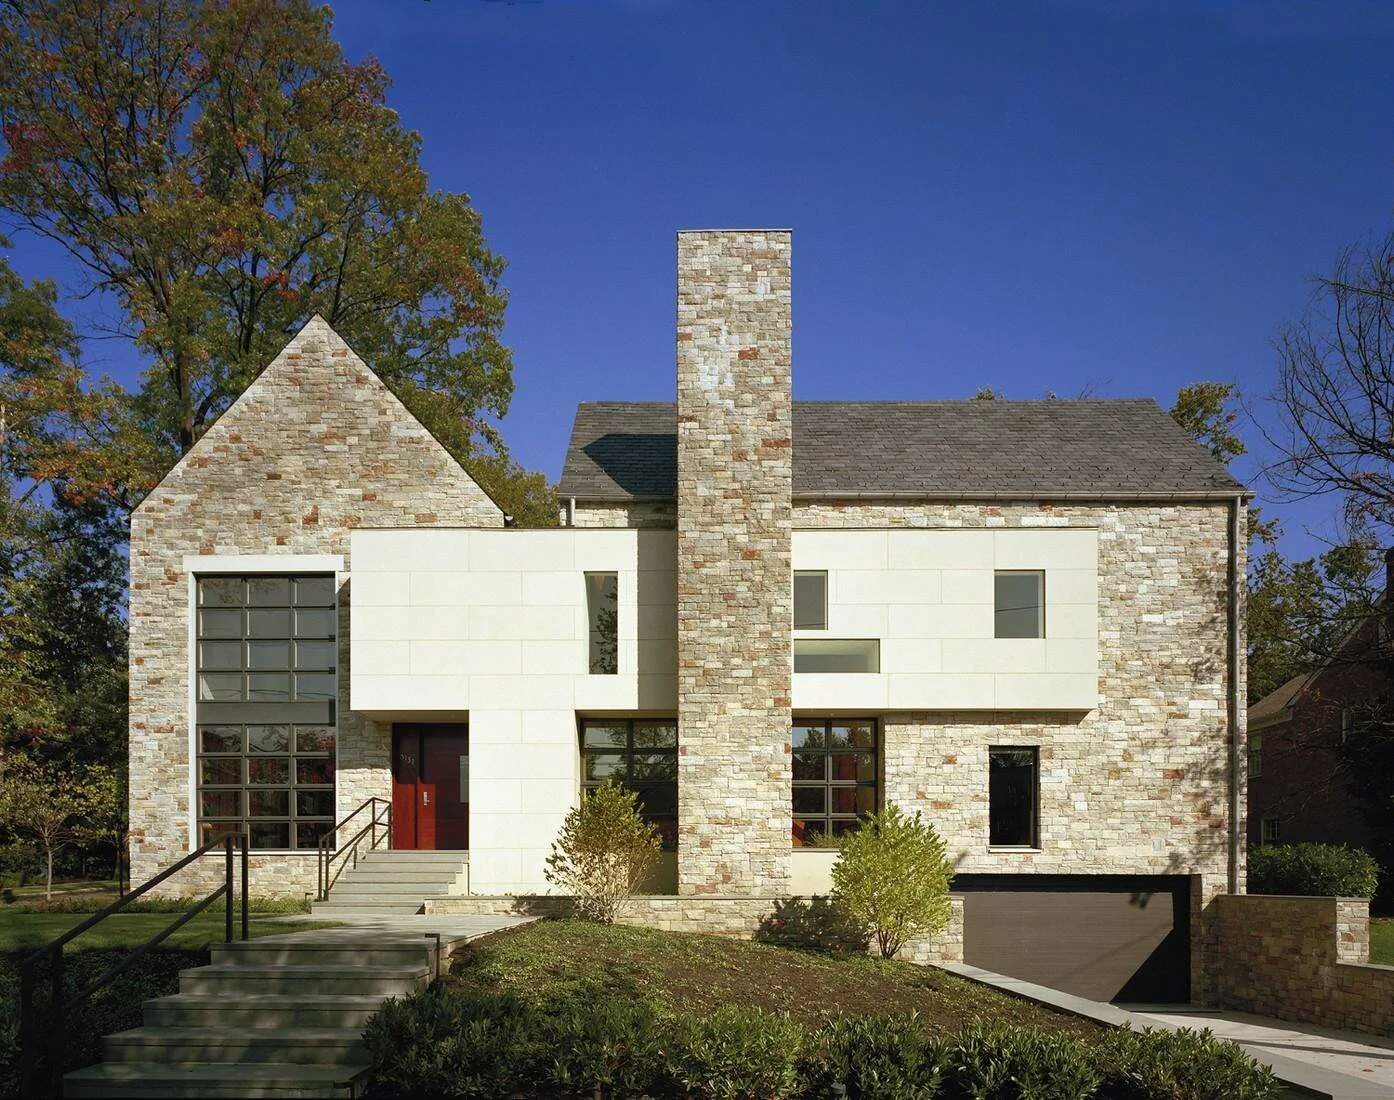 Modern us house. David Jameson Architect. Современная американская архитектура. Современный каменный дом. Архитектура американских домов.